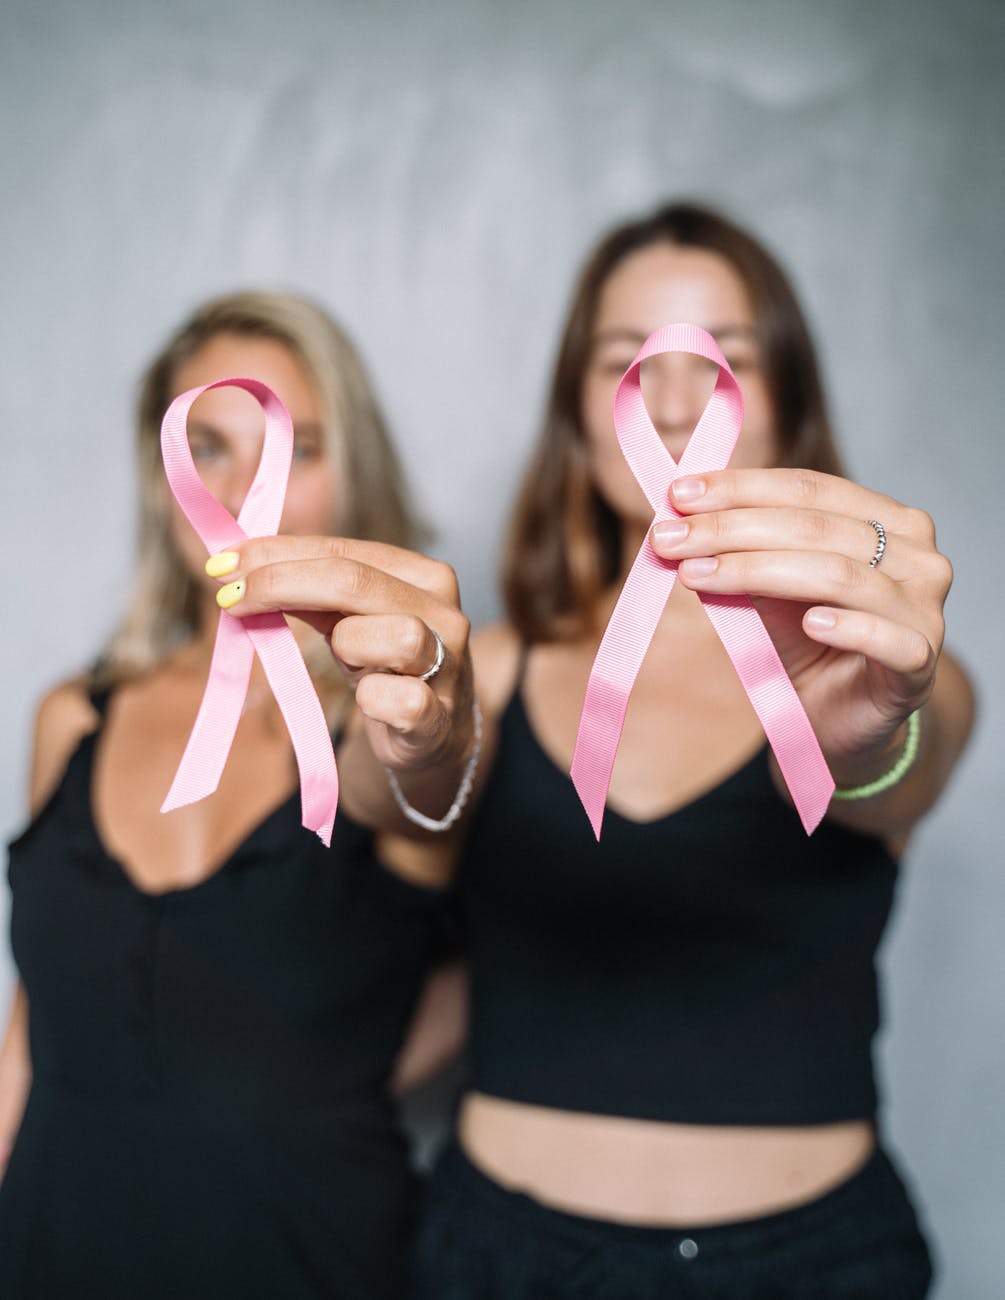 Faça o autoexame para prevenção do câncer de mama